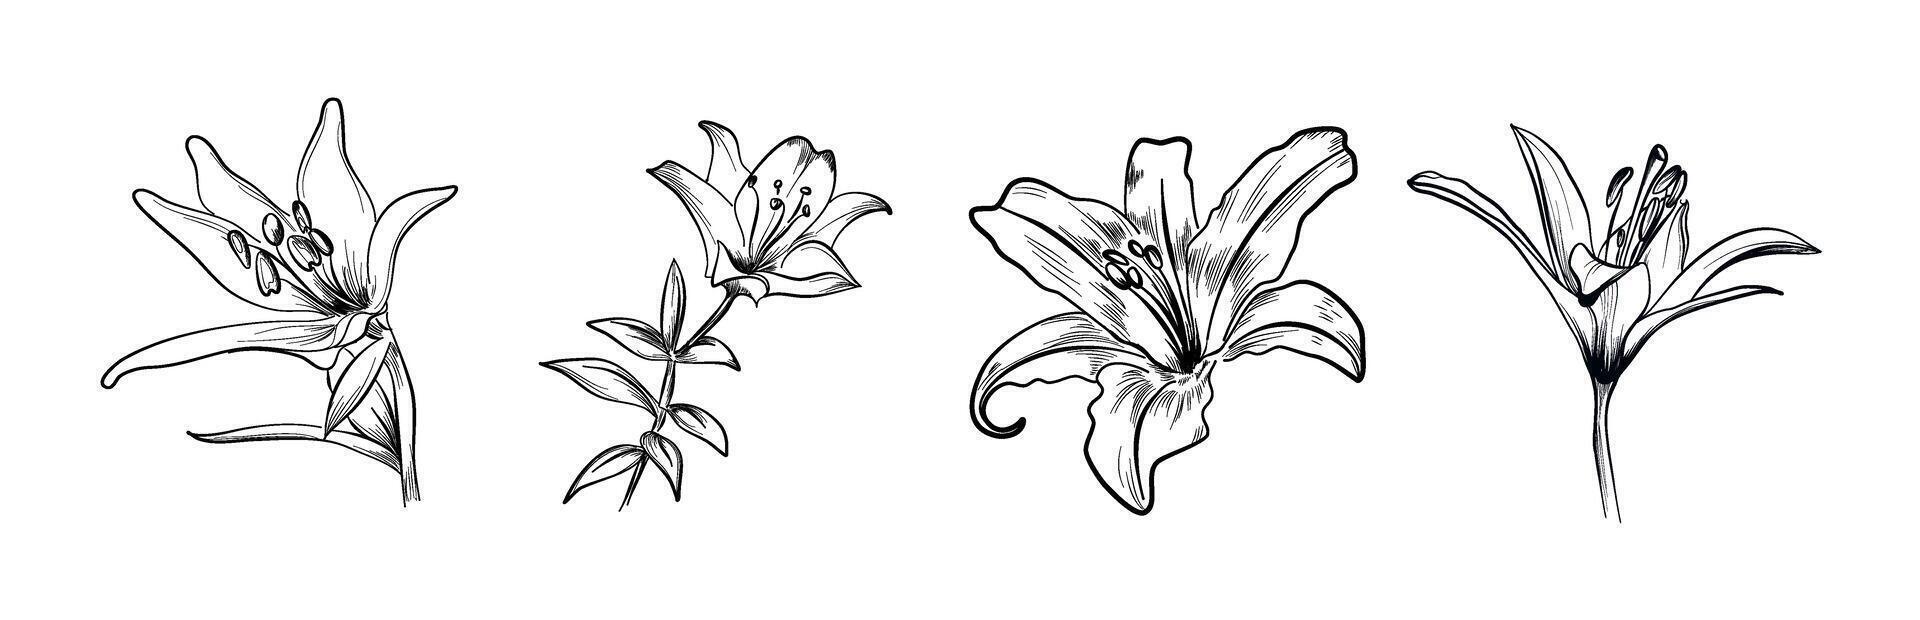 reeks van lelie bloemen hand getekend vector